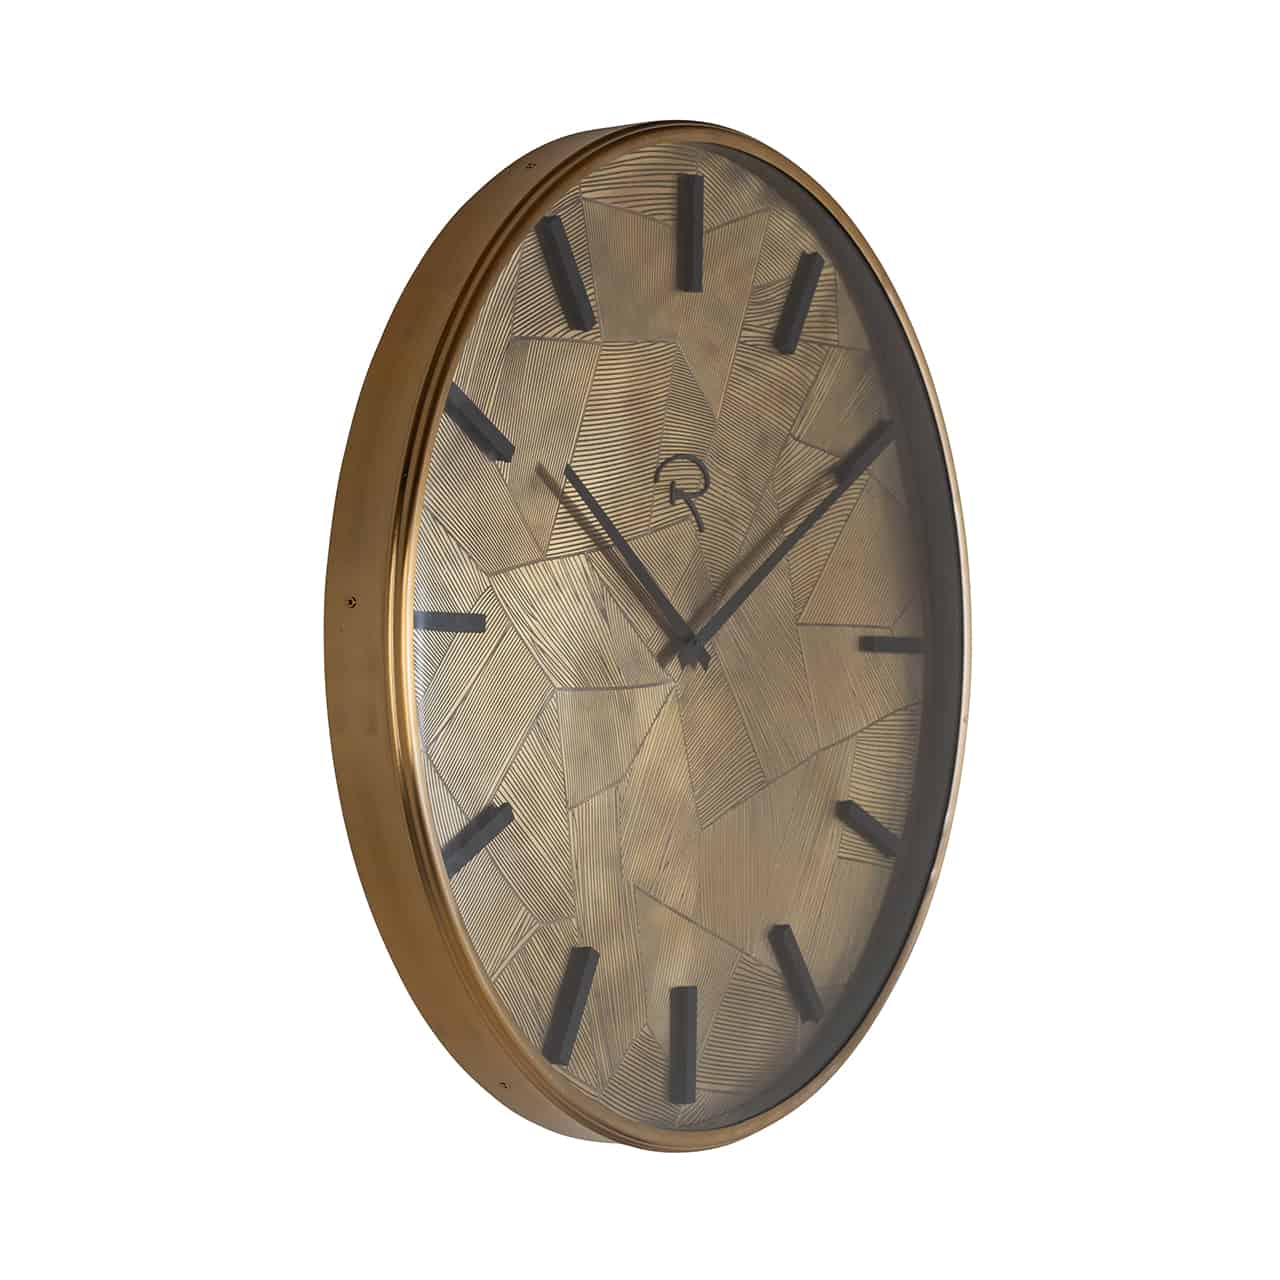 Clock Quincykk-0086richmond